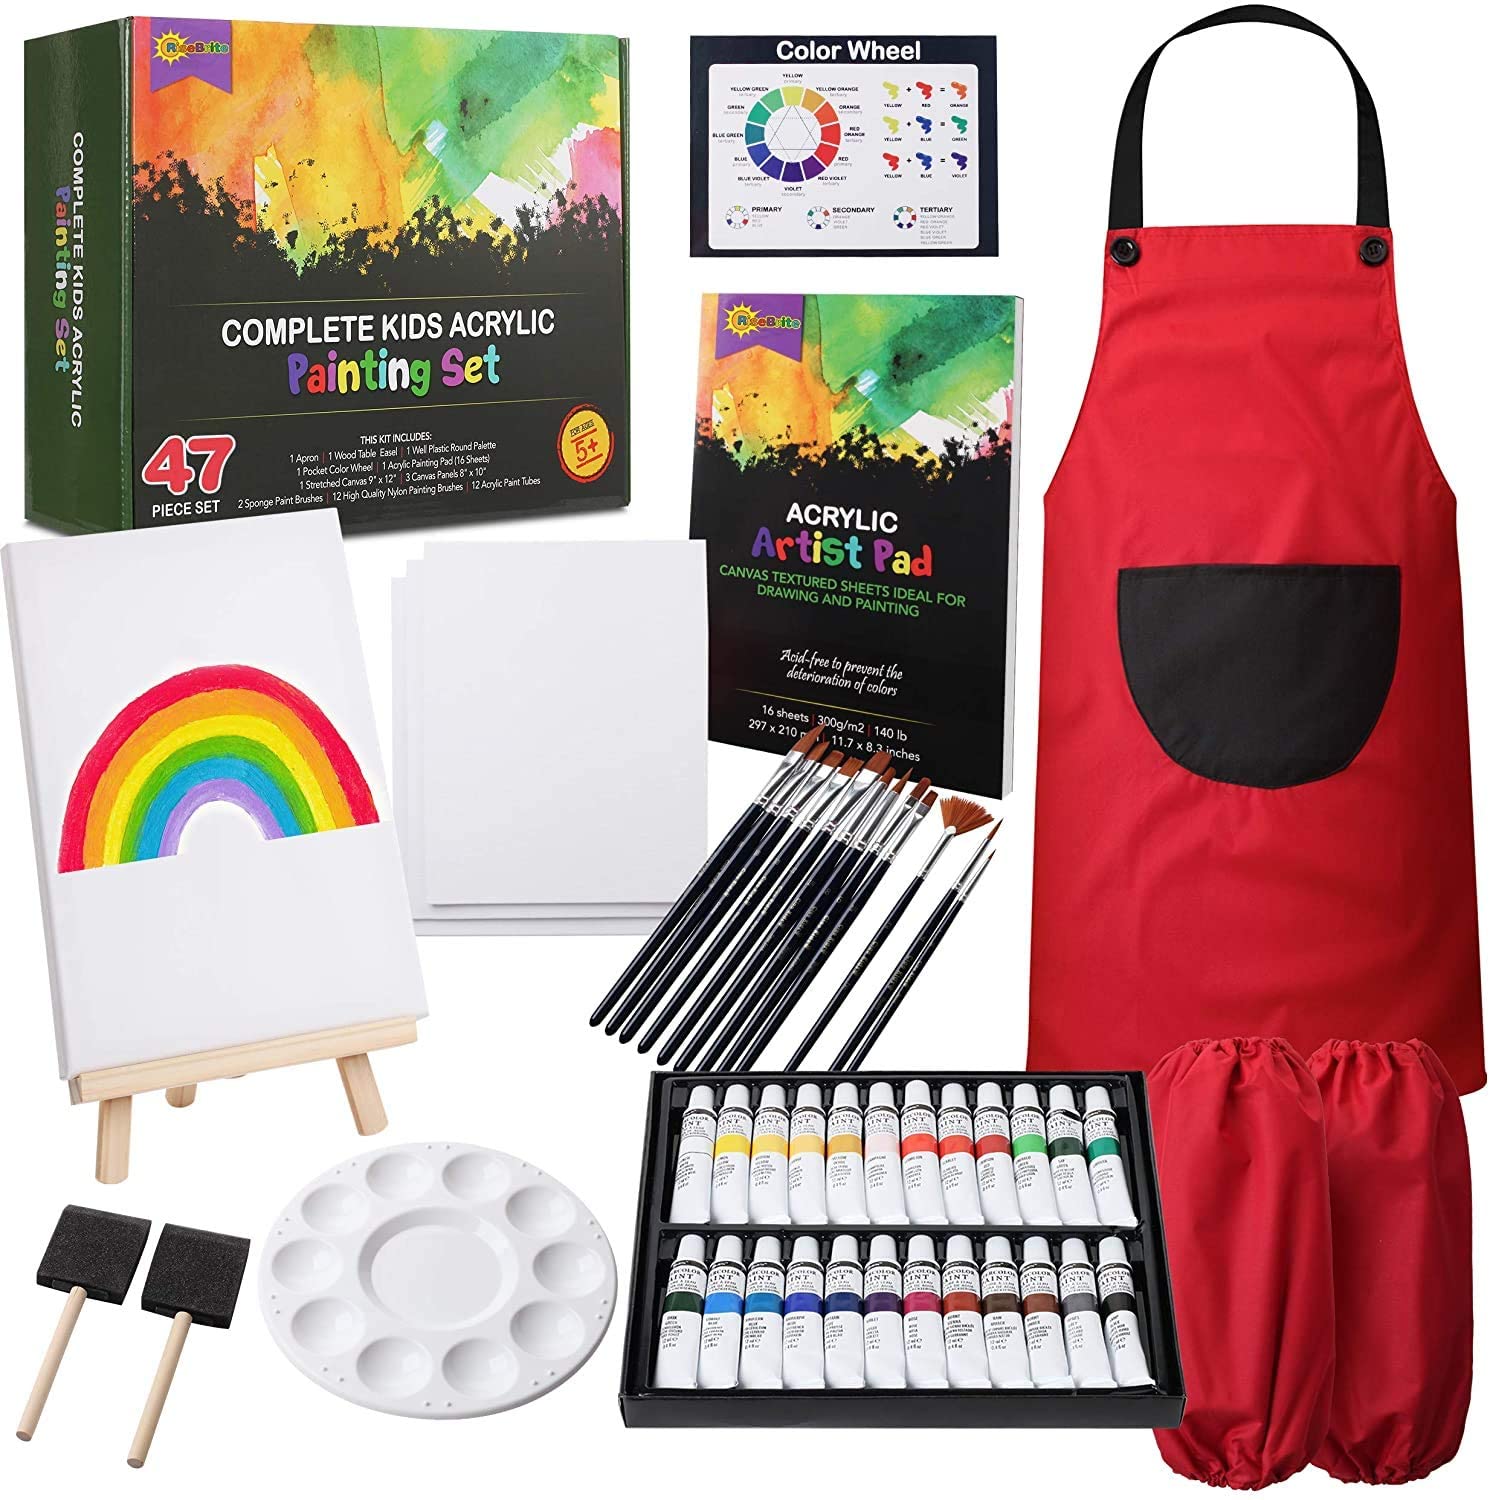 RiseBrite Kids Acrylic Art Set 47 Pieces Has 24 Paint Colors